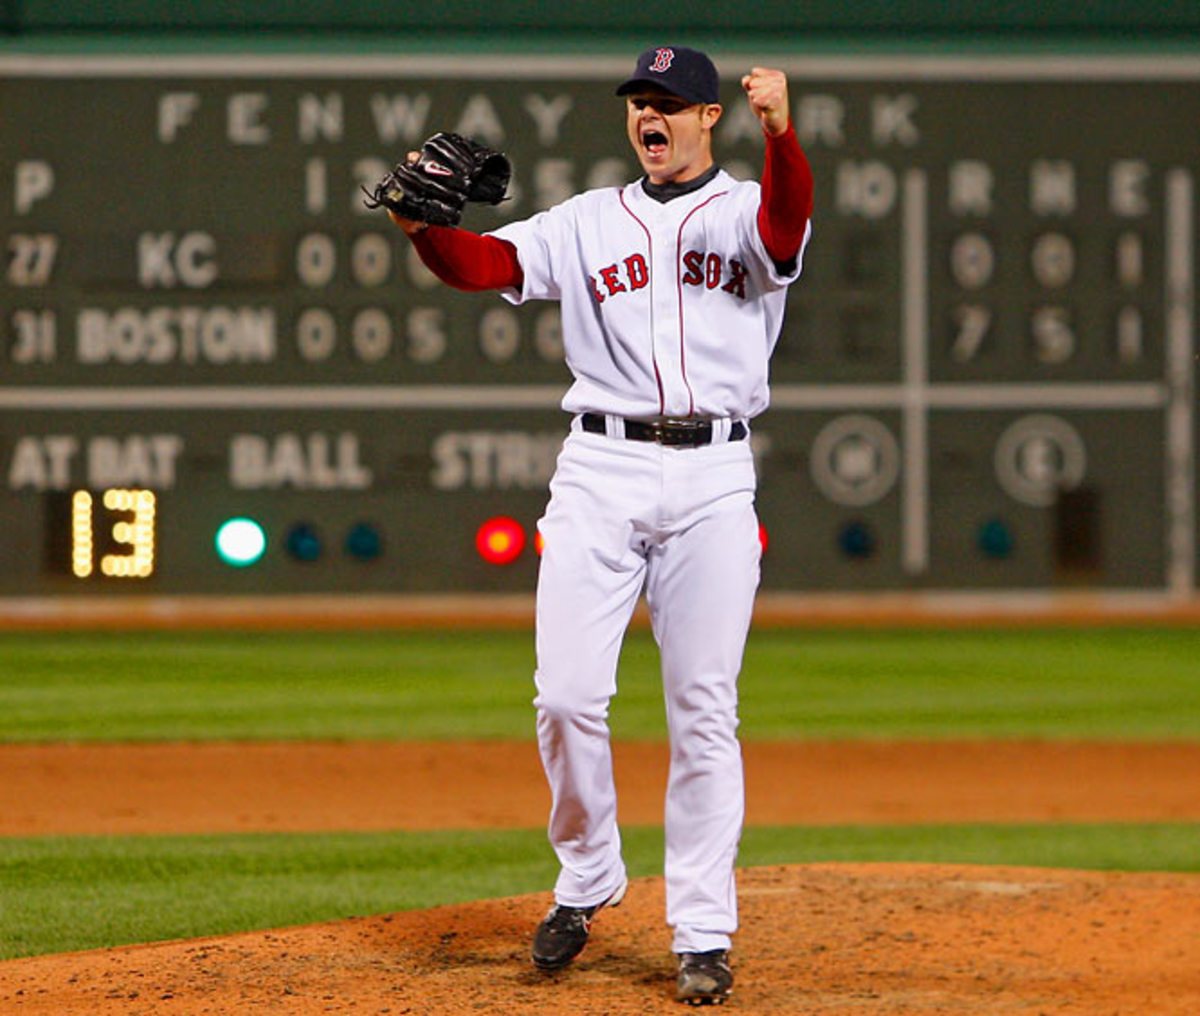 Boston's Jon Lester no-hits the Royals